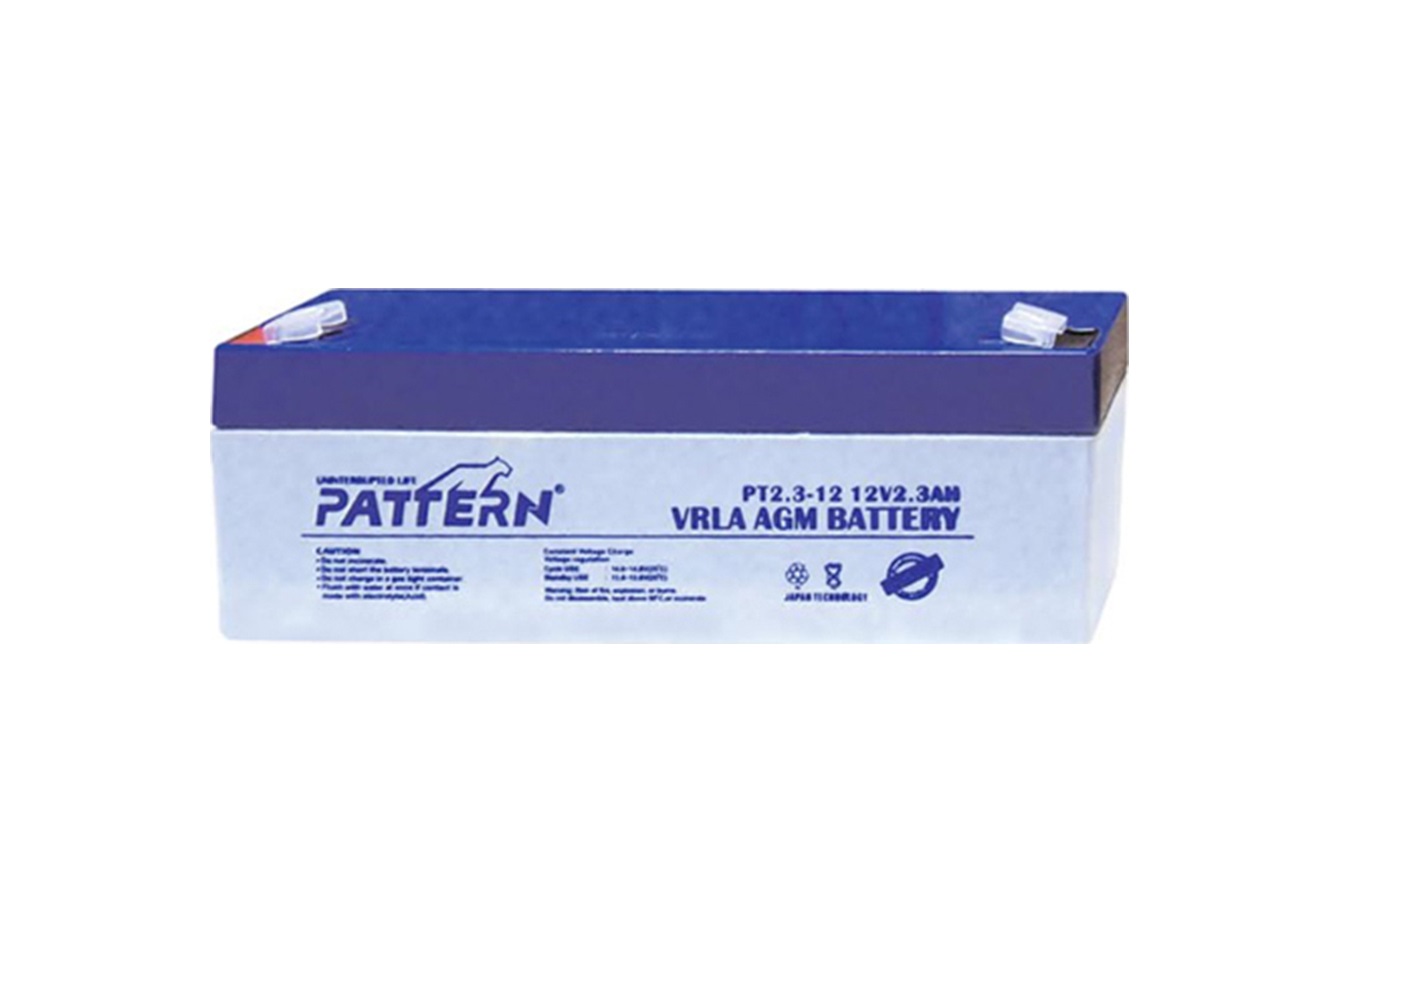 PATTERN PT2.3-12 12 Volt Rechargeable Lead Battery /2.3 Ah